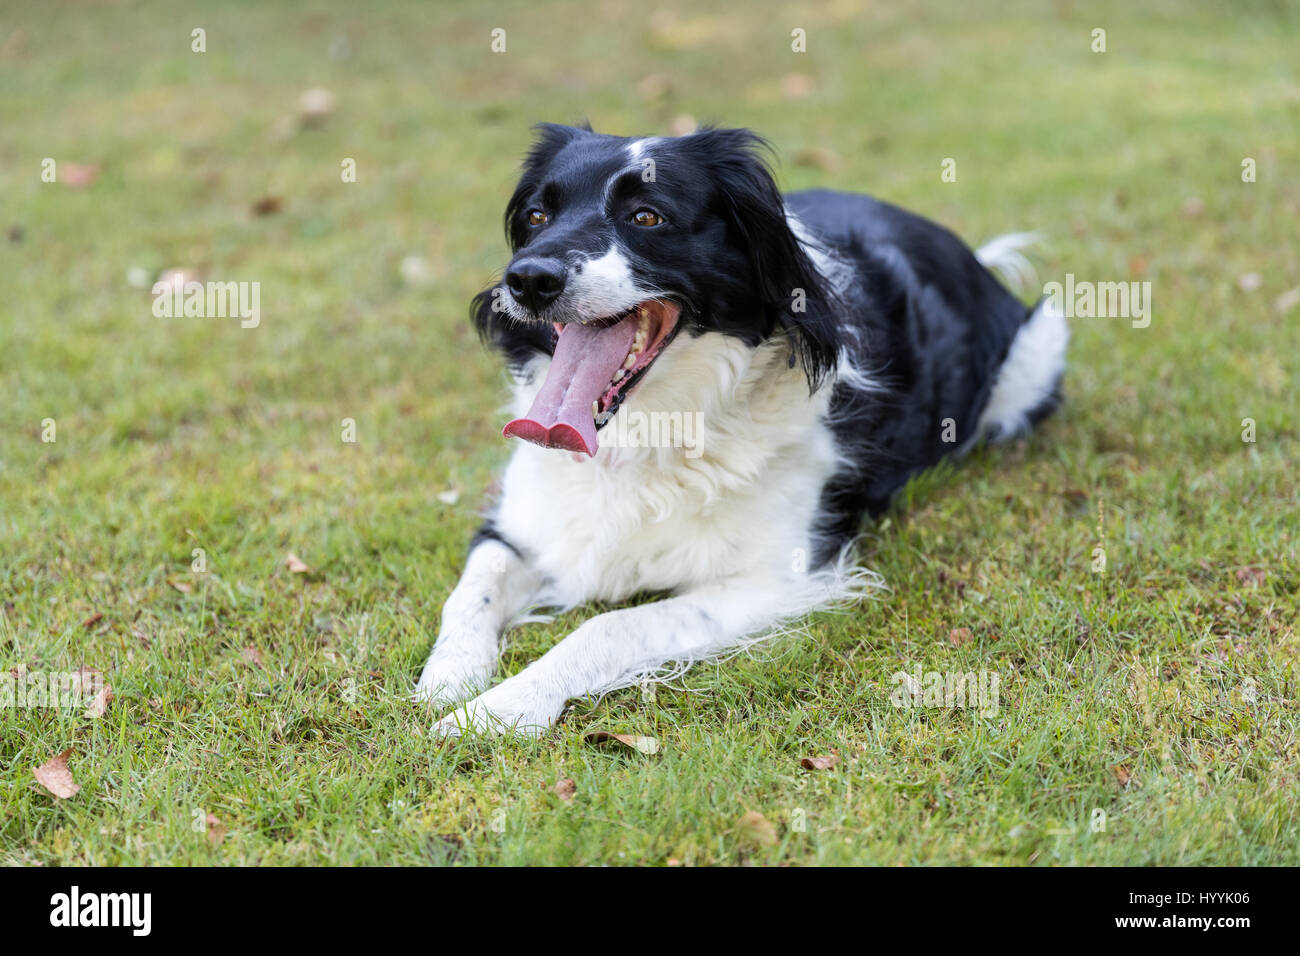 Keuchend schwarz-weiß Mischling Hund gelegt auf dem Rasen, die darauf  warten, etwas mehr spielen Stockfotografie - Alamy